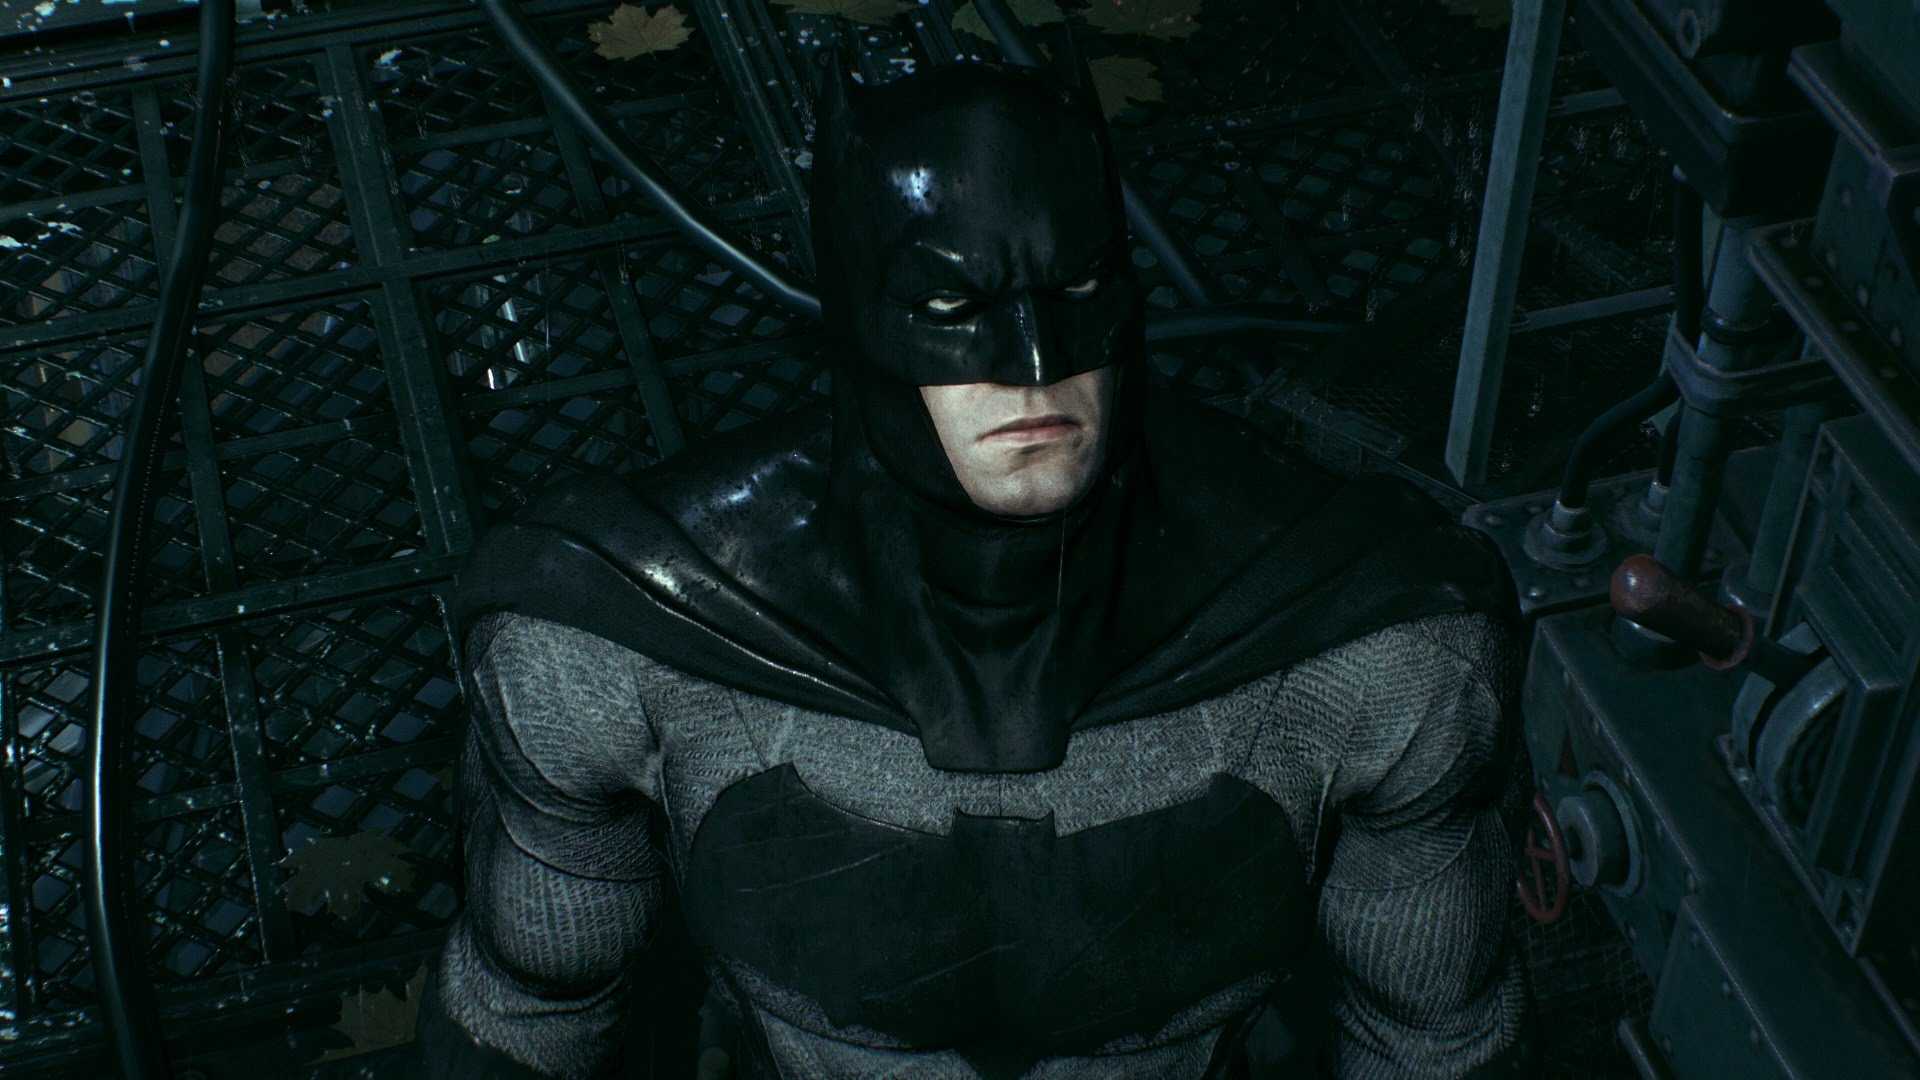 Обзор мультфильма DC Бэтмен: Тихо Batman: Hush, сильно расходящегося с комиксом